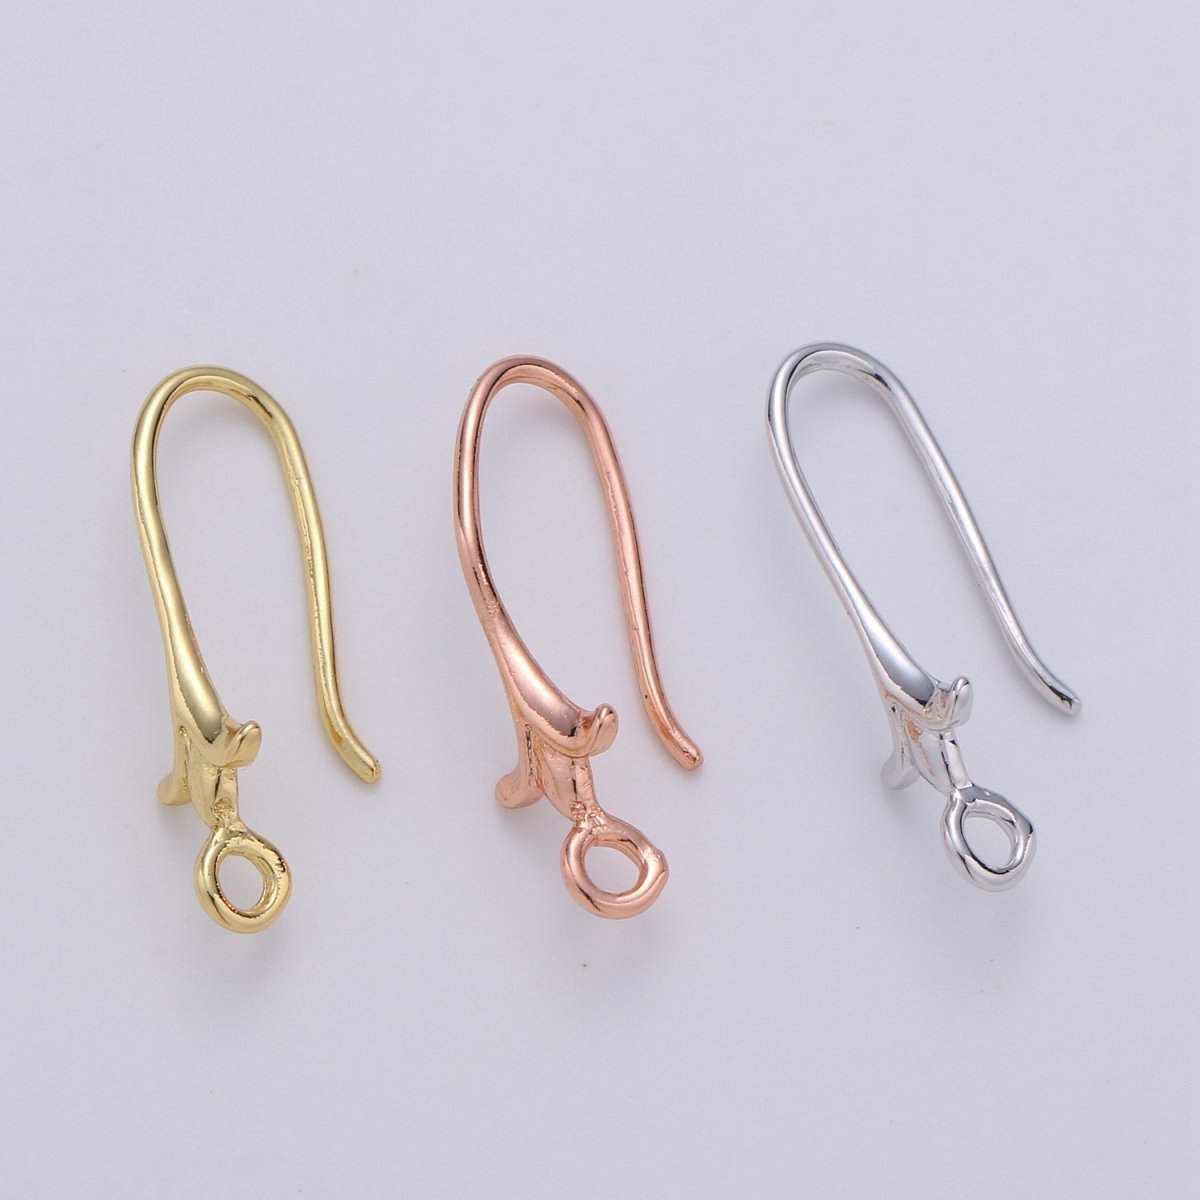 24k Vermeil Gold Earrings, Open Link, Hook Earring, Flower Earring, Flower Stem Earring, DIY Earrings, Everyday Wear Earrings K-672 - K-674 - DLUXCA